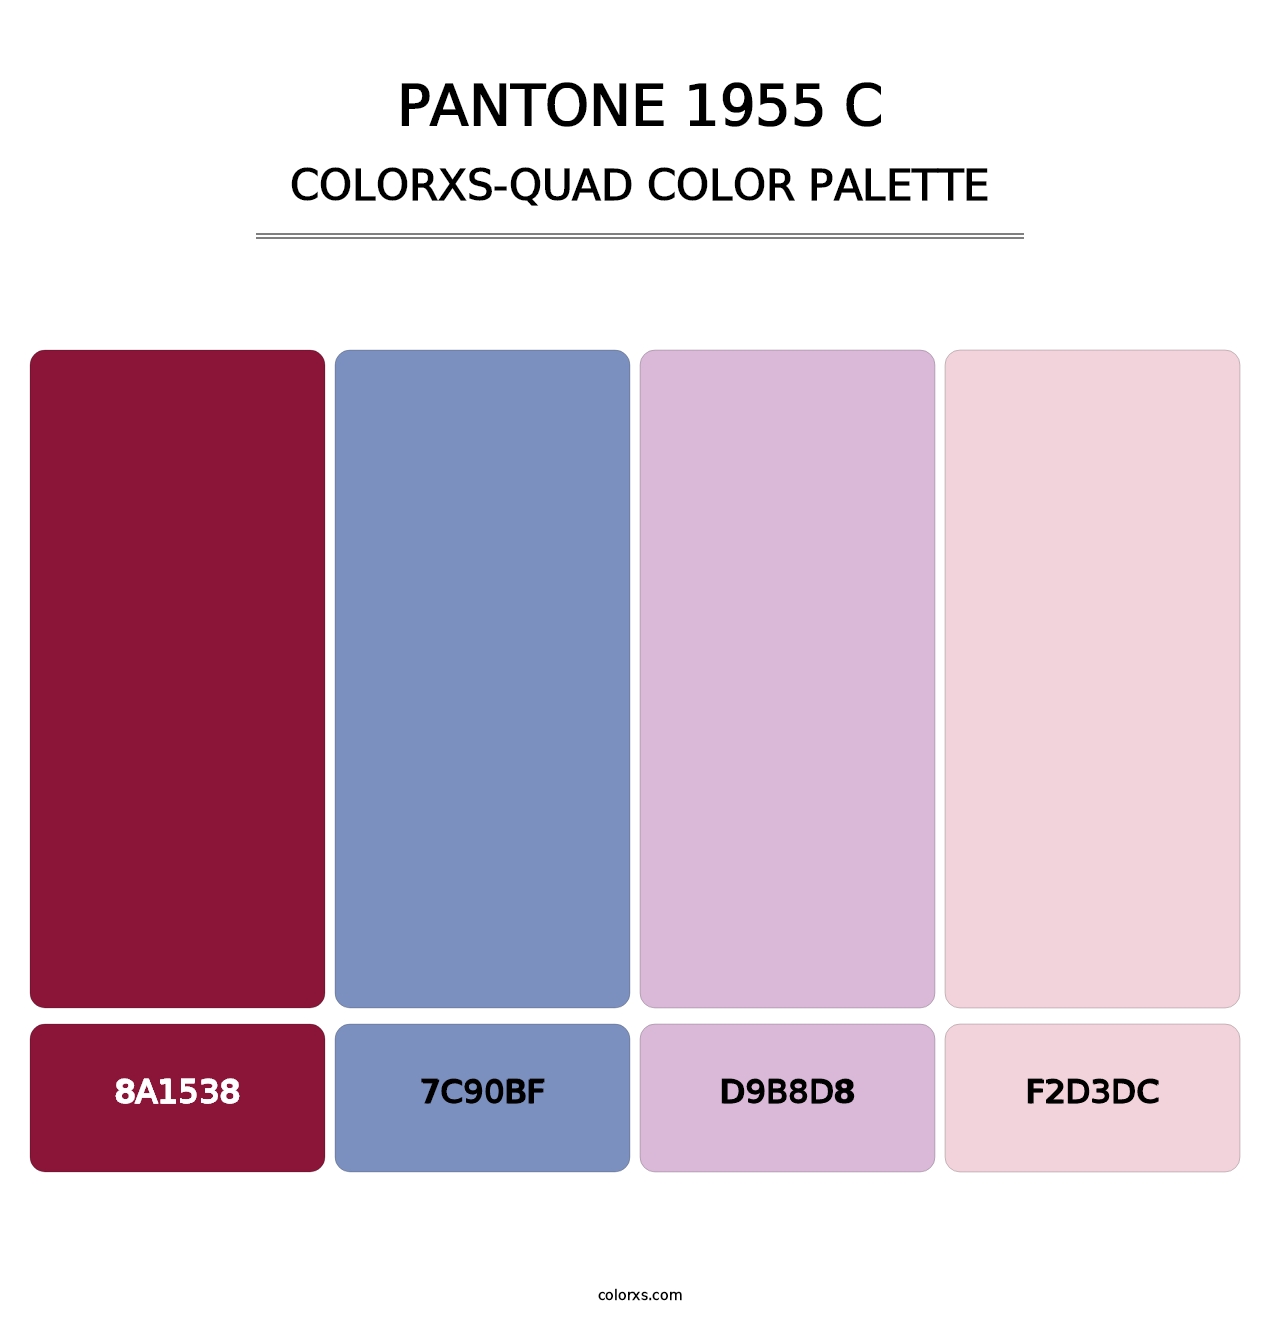 PANTONE 1955 C - Colorxs Quad Palette